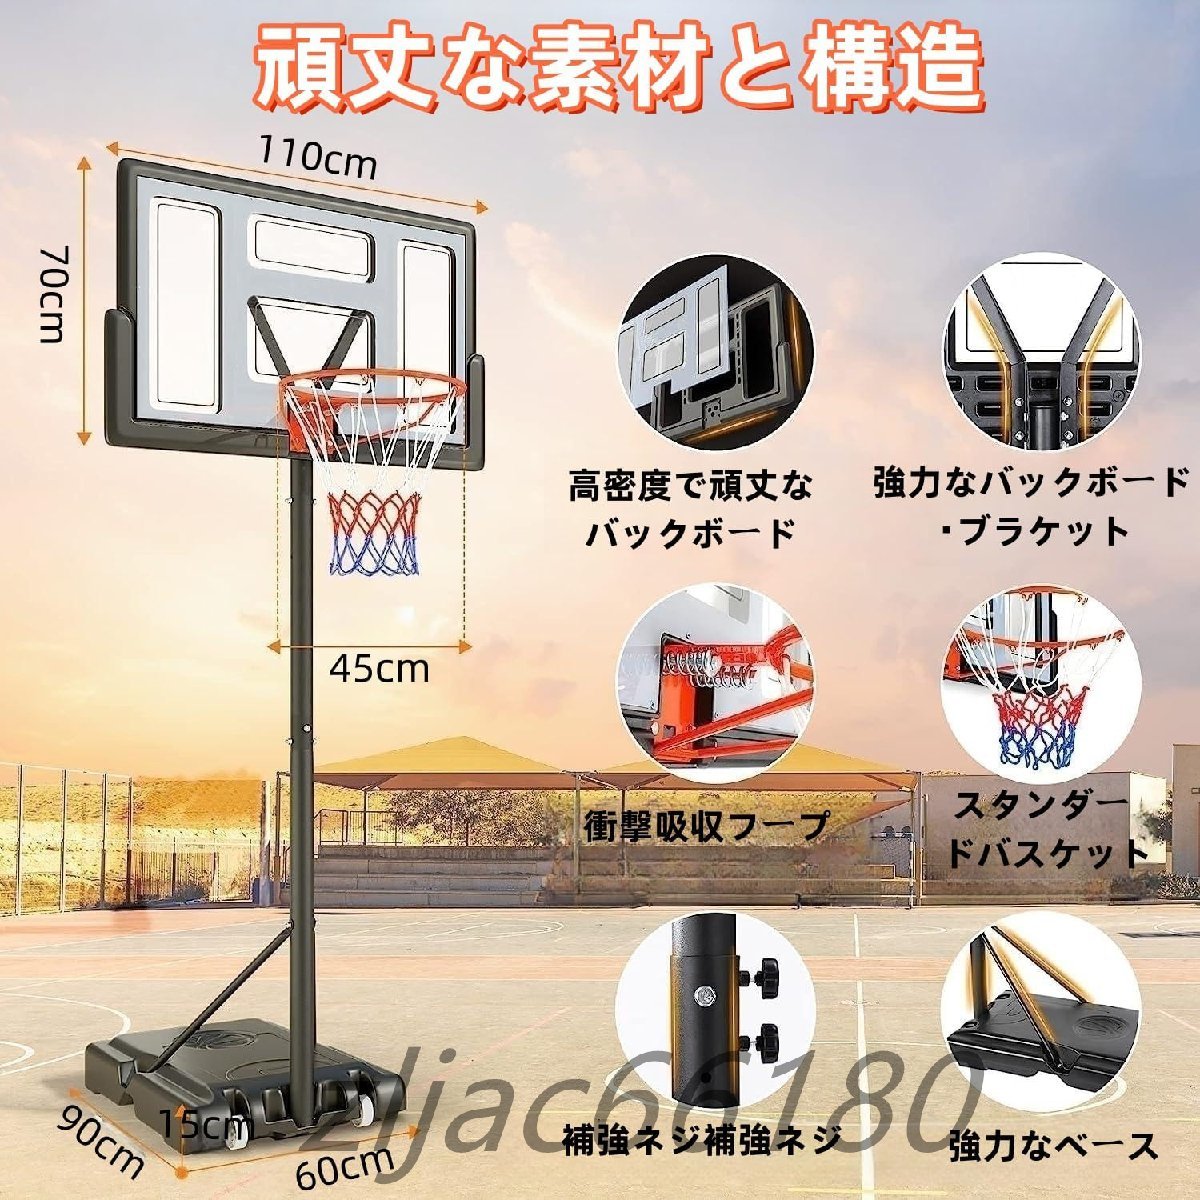 バスケットゴール 高度 305cm 7号球対応 屋外 室内 バスケットゴール 簡易 調節可能 移動式 練習用 バスケットボール 自立式 工具付きの画像6